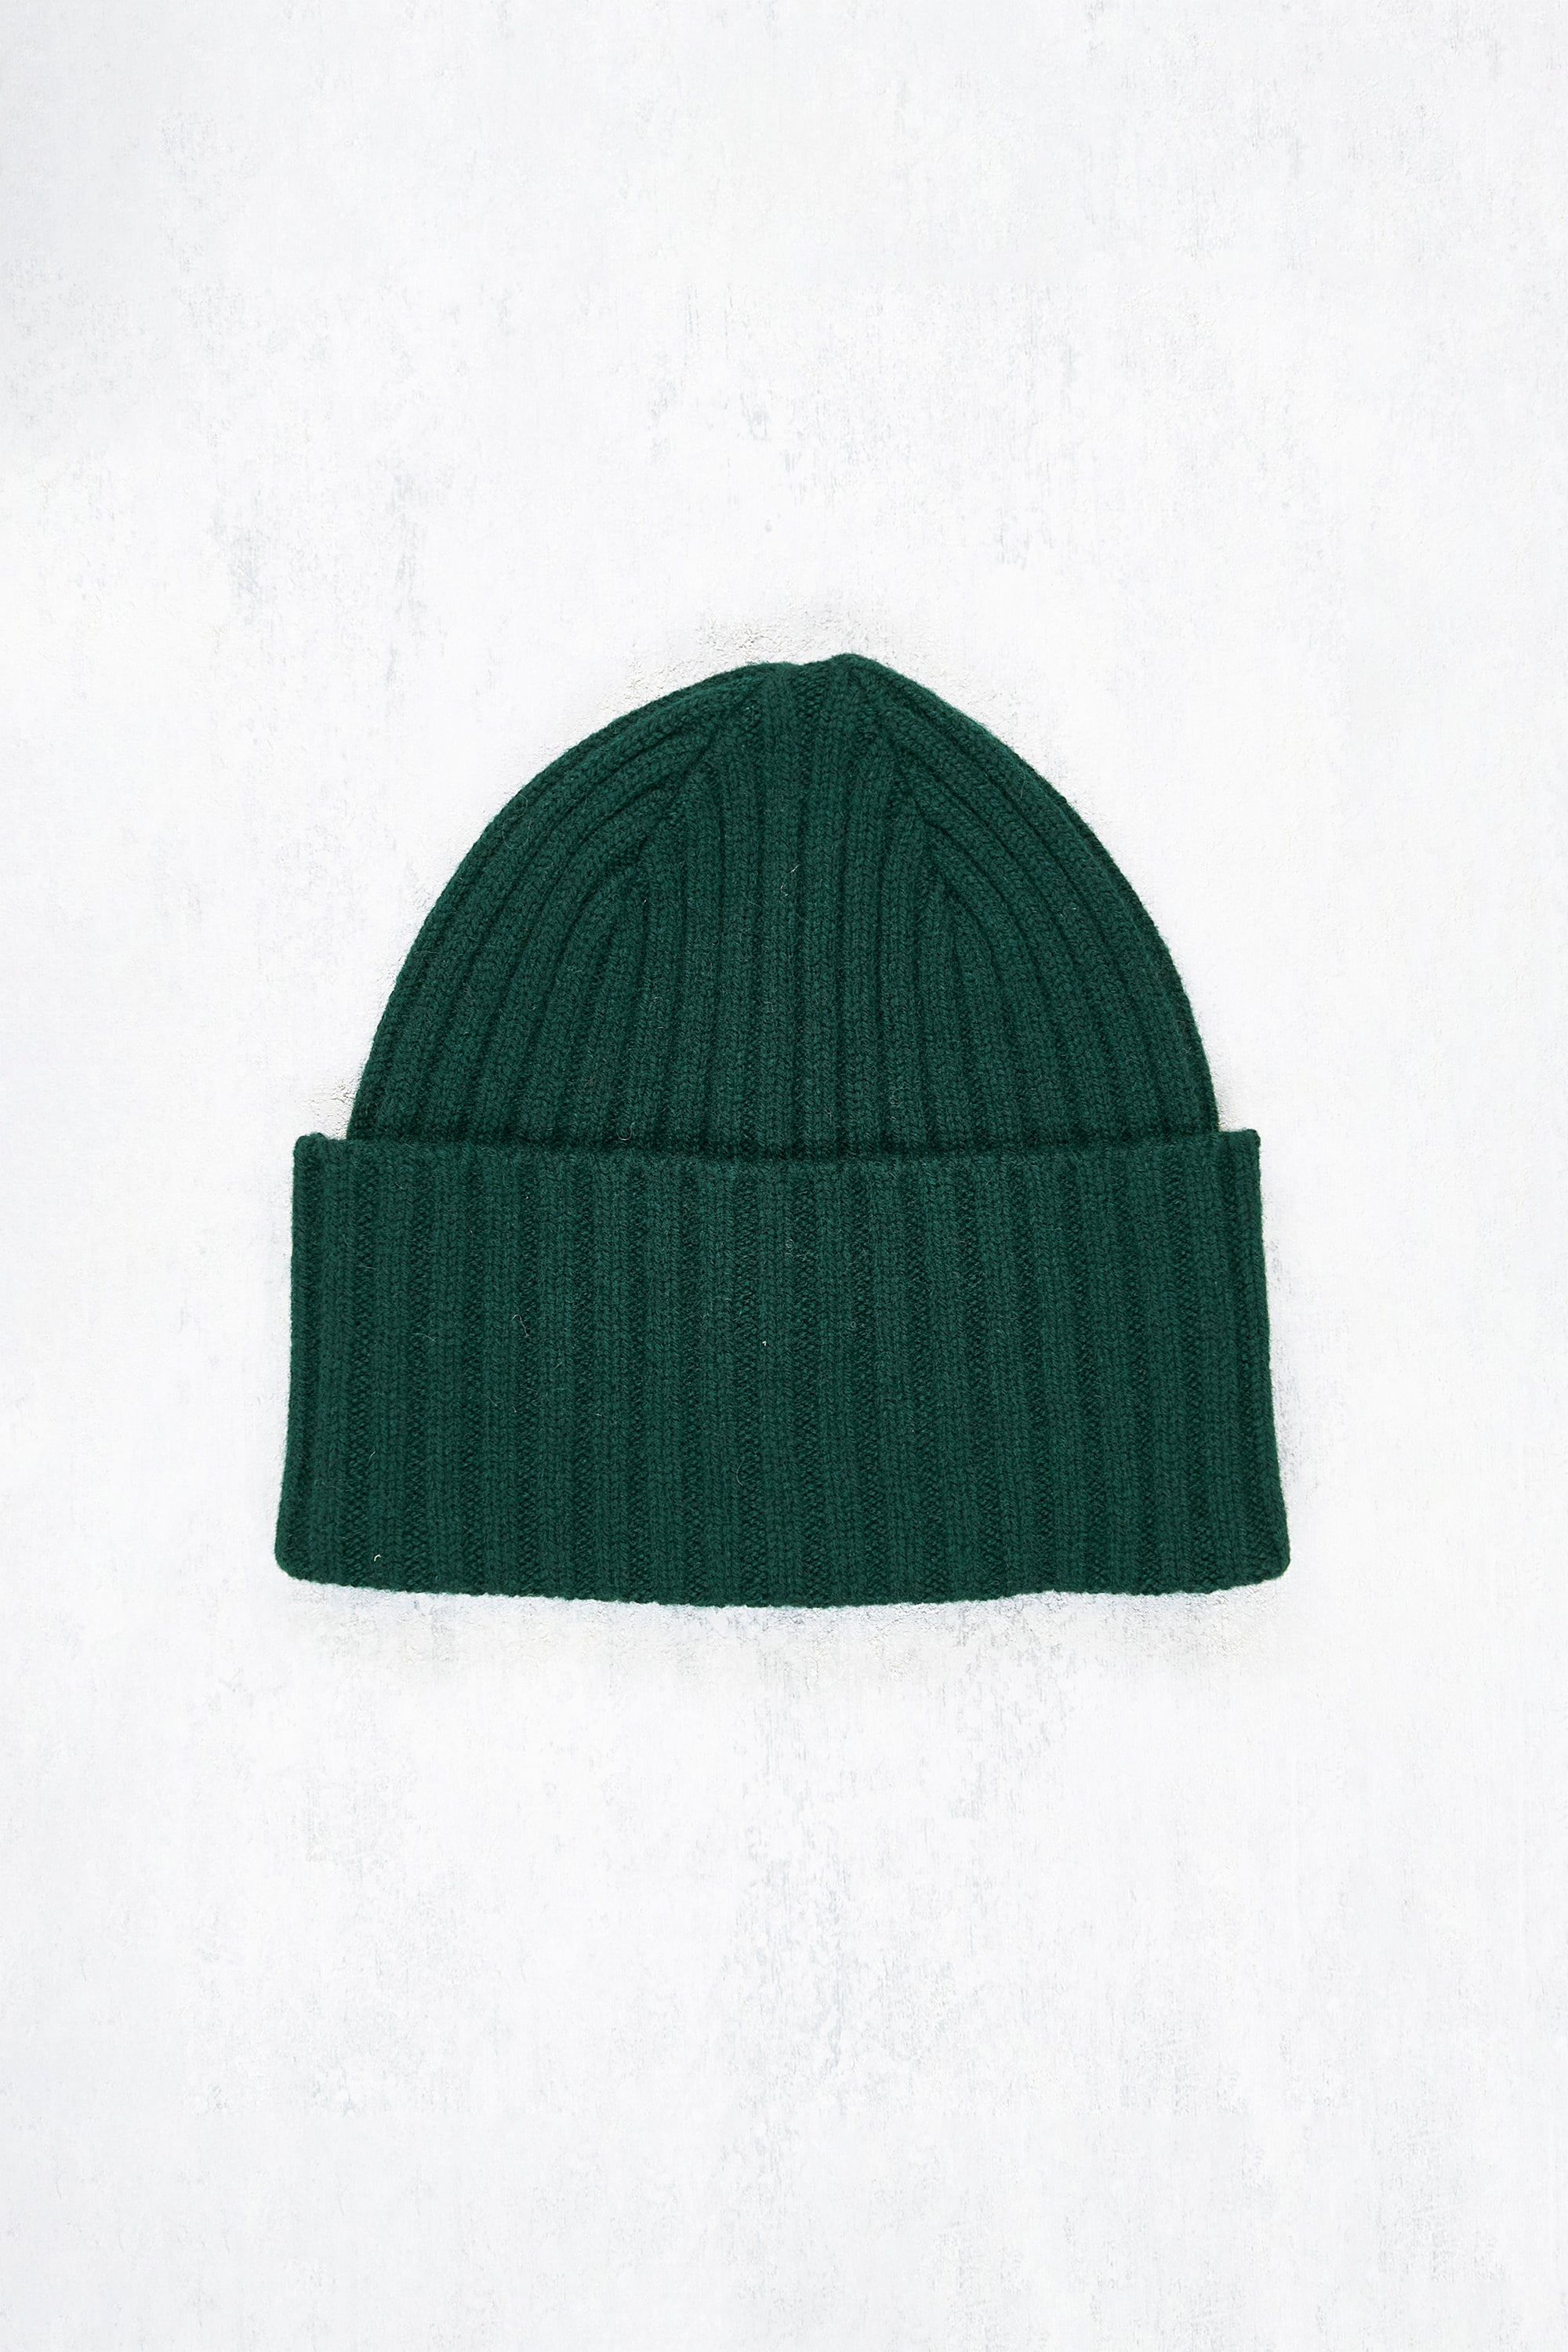 Drake's Dark Green Lambswool Knit Hat